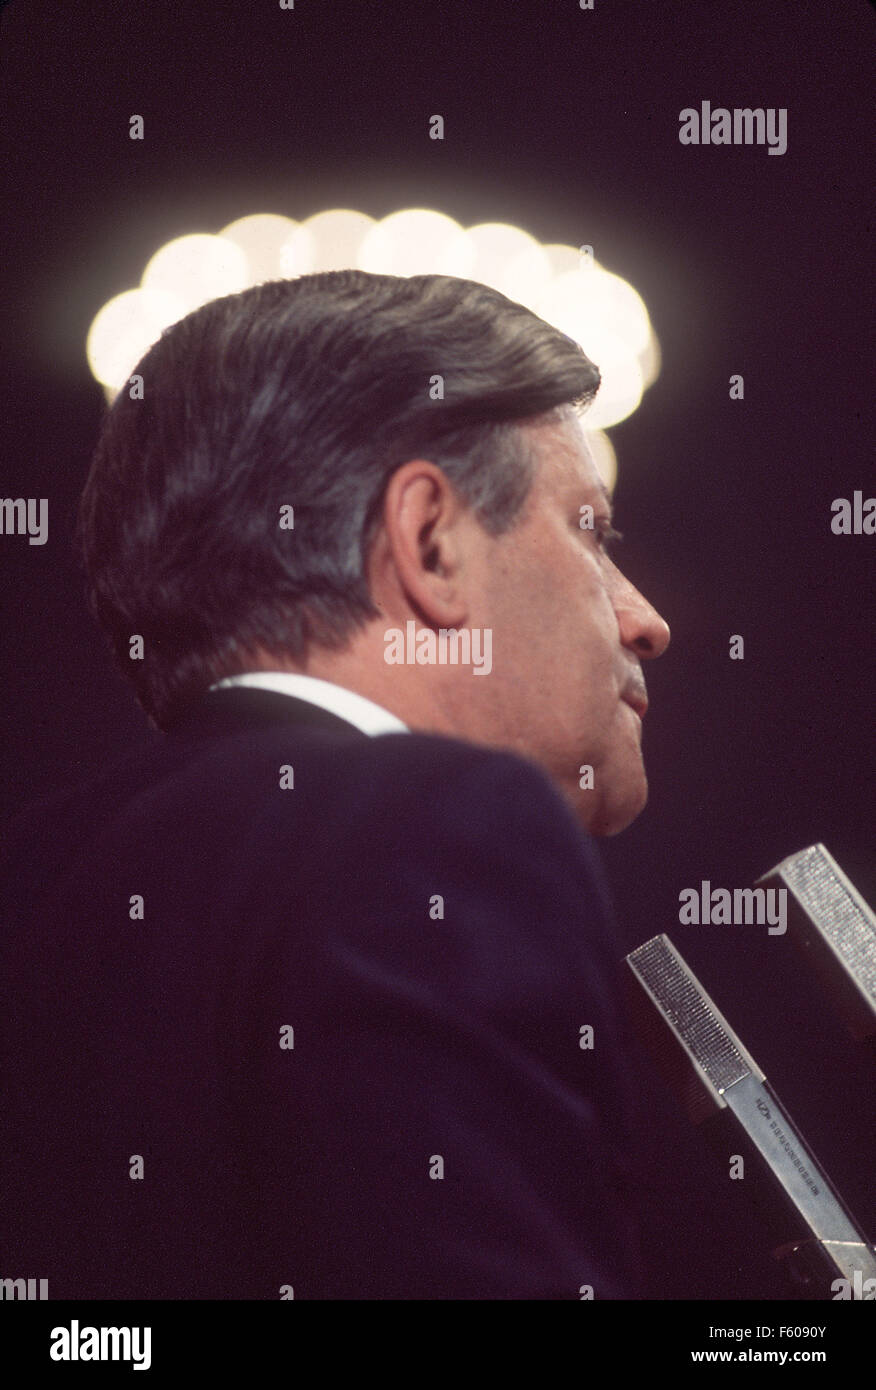 Helmut Schmidt è in piedi presso l'altoparlante alla scrivania. Il lampadario sopra la sua testa assomiglia a una corona o un alogeno. Immagine non datata da circa 1975. Foto Stock